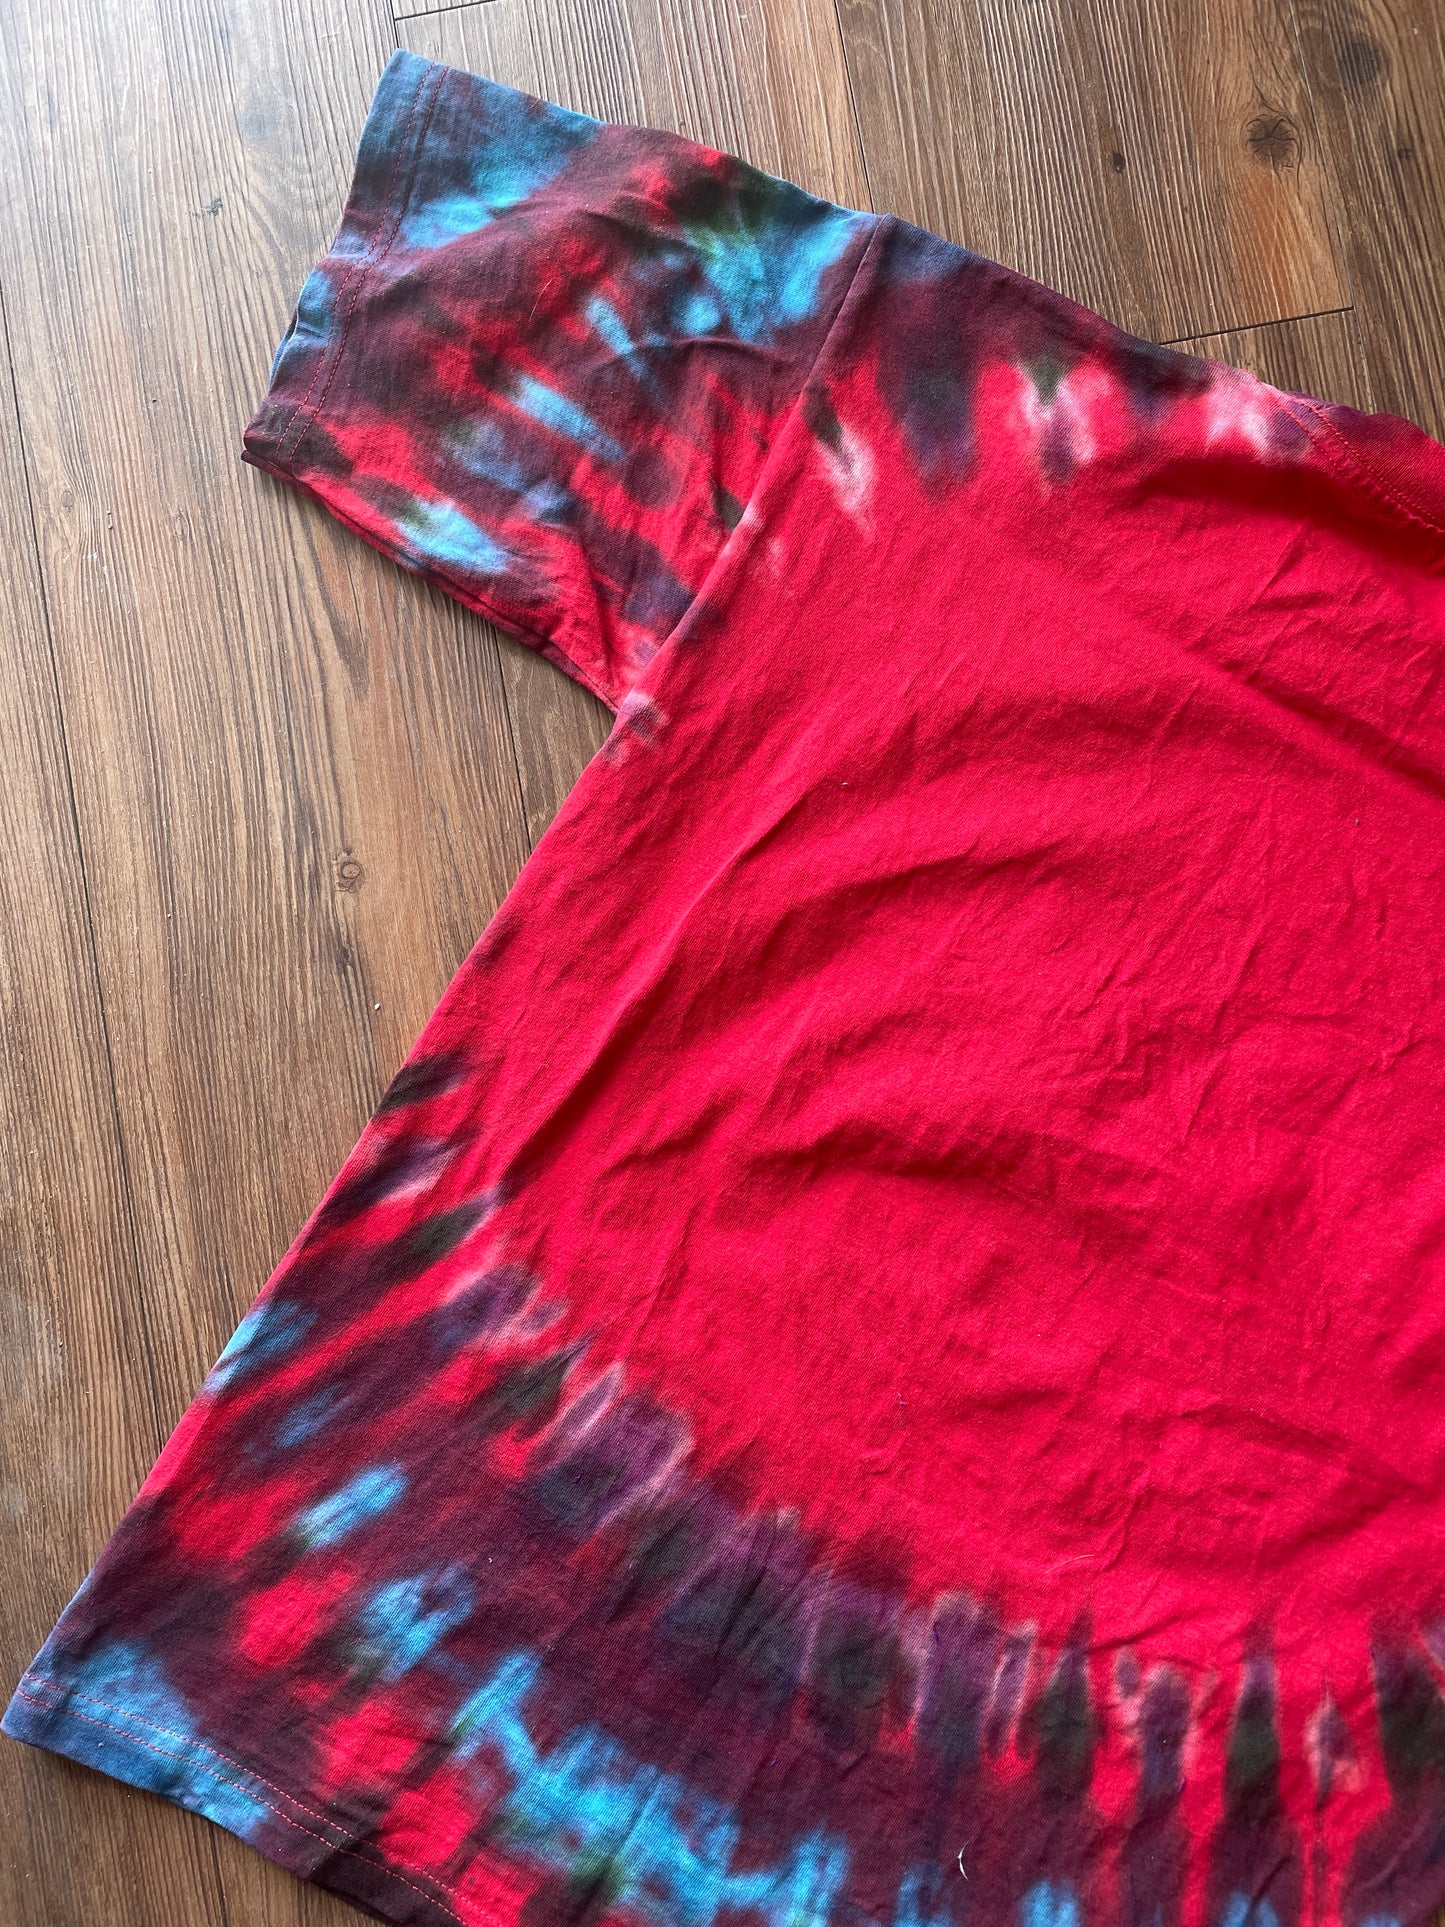 Medium Men’s University of Utah Utes Tie Dye T-Shirt | Red Black and Blue Tie Dye Short Sleeve